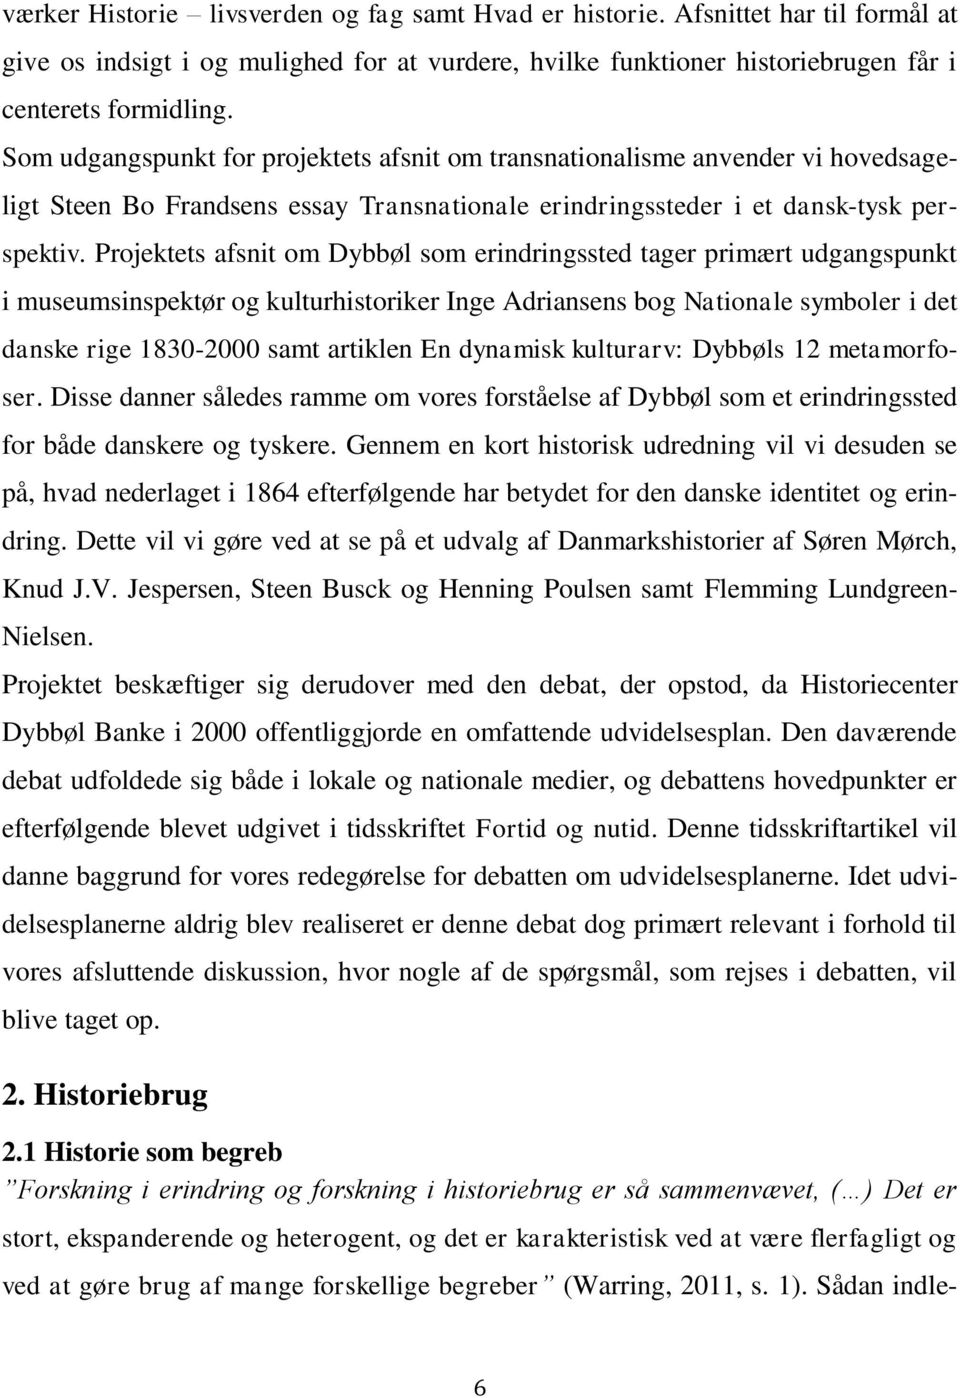 Projektets afsnit om Dybbøl som erindringssted tager primært udgangspunkt i museumsinspektør og kulturhistoriker Inge Adriansens bog Nationale symboler i det danske rige 1830-2000 samt artiklen En